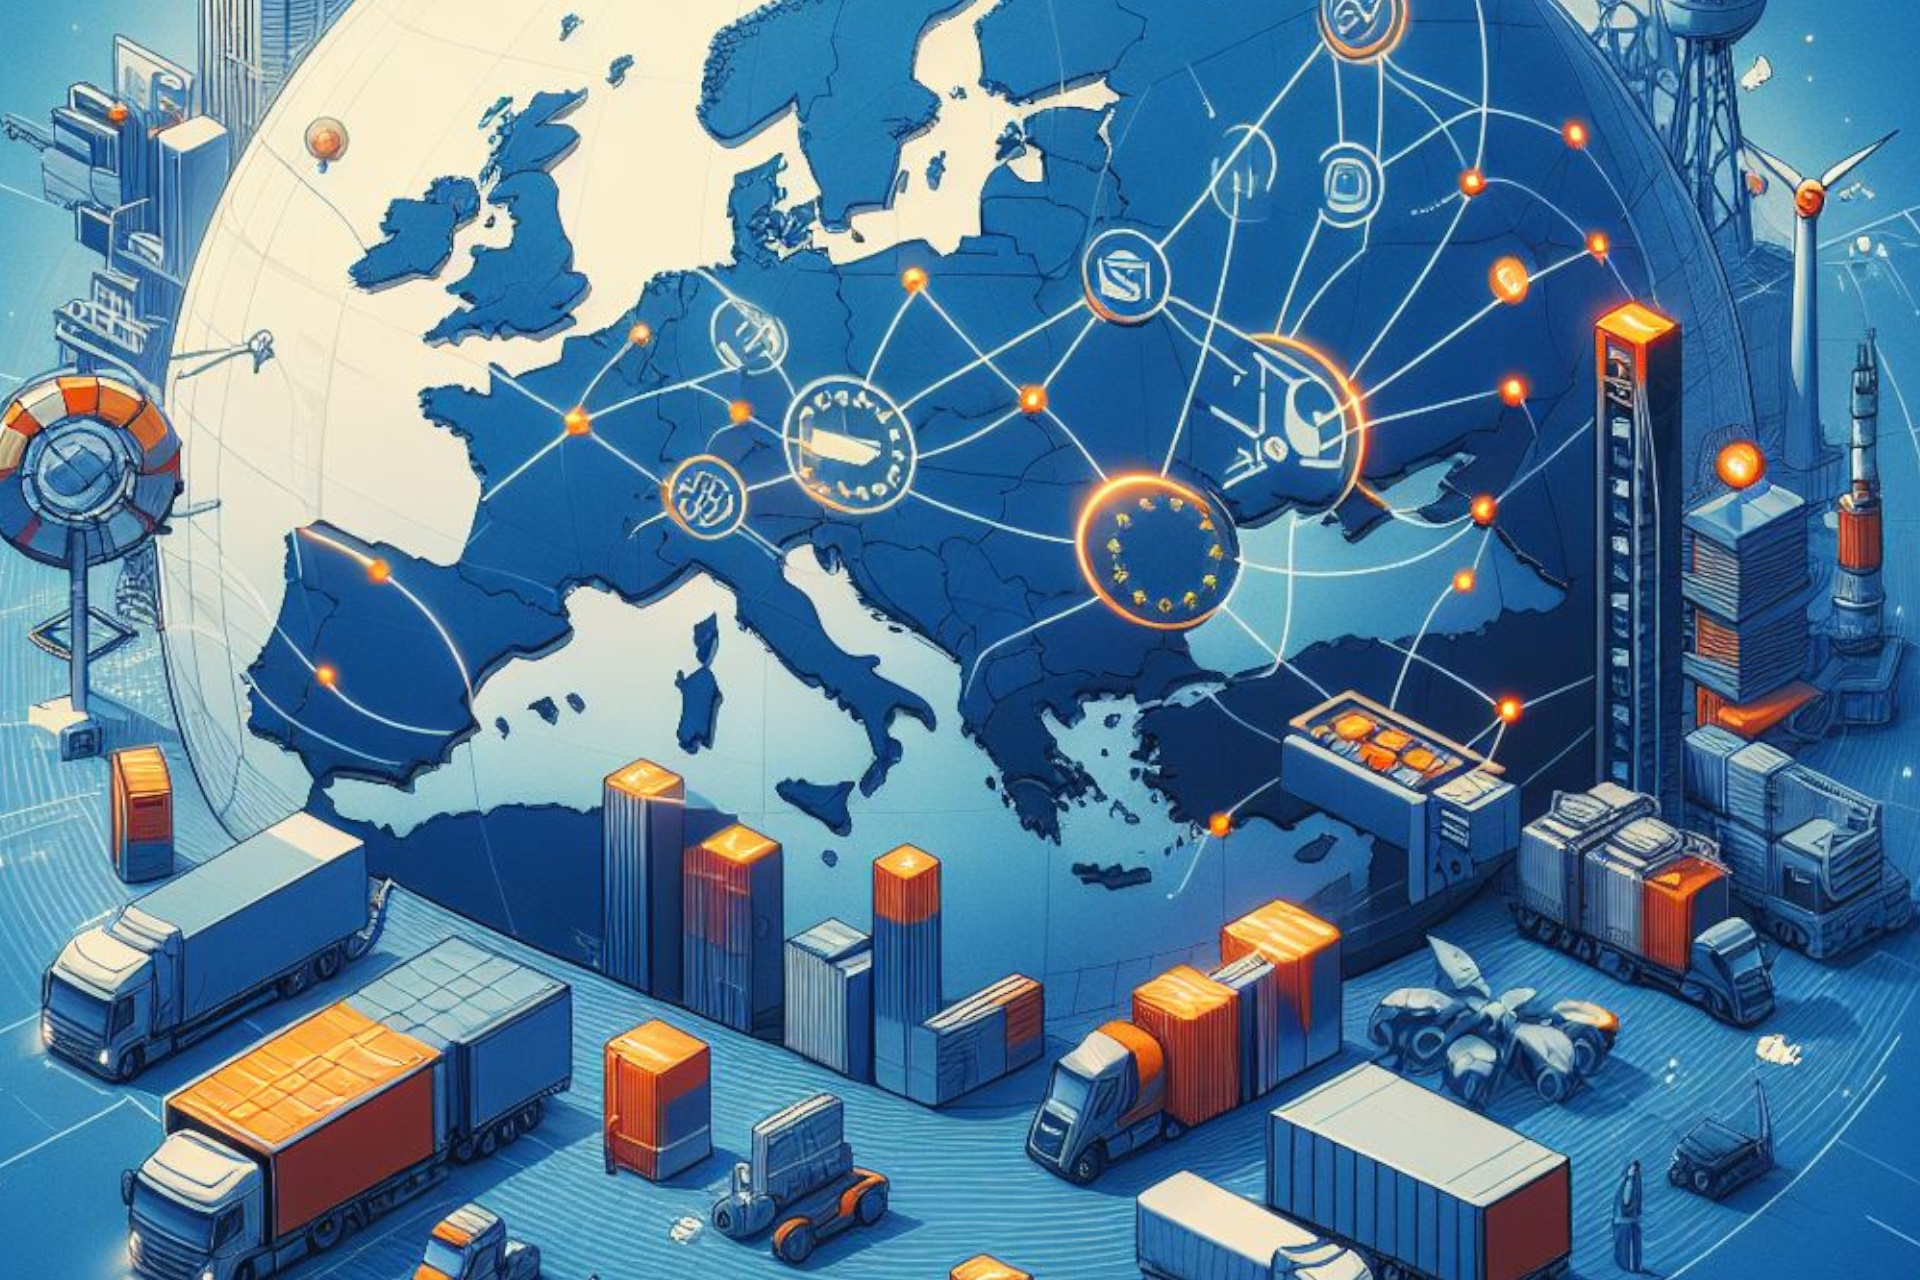 Europe's Digital Transformation of Cross-Border Trade